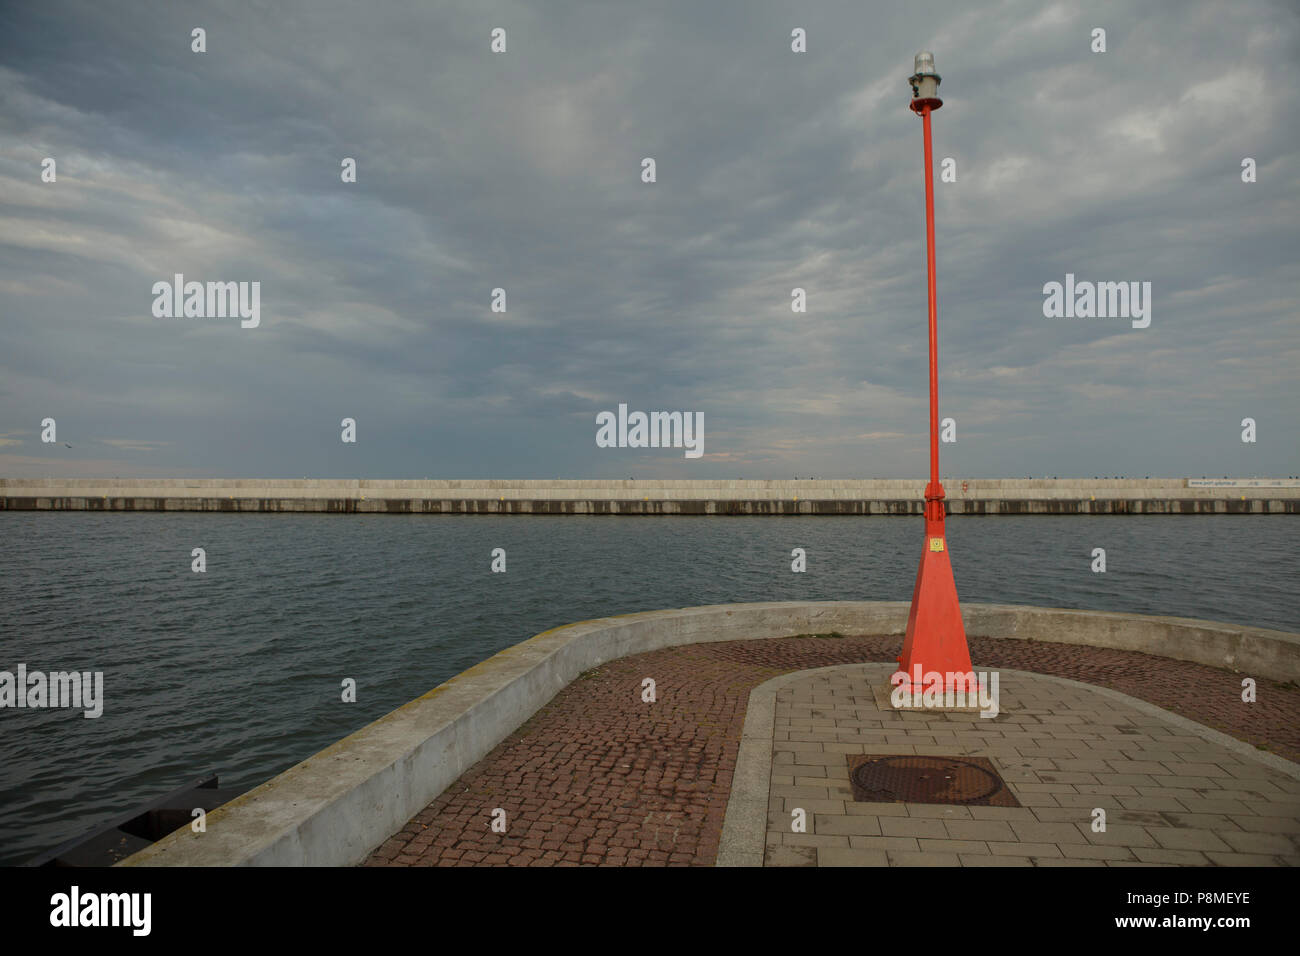 Ciel gris foncé sur un port de la mer rouge, nagationa lanterne sur le côté droit, juillet en Europe Banque D'Images